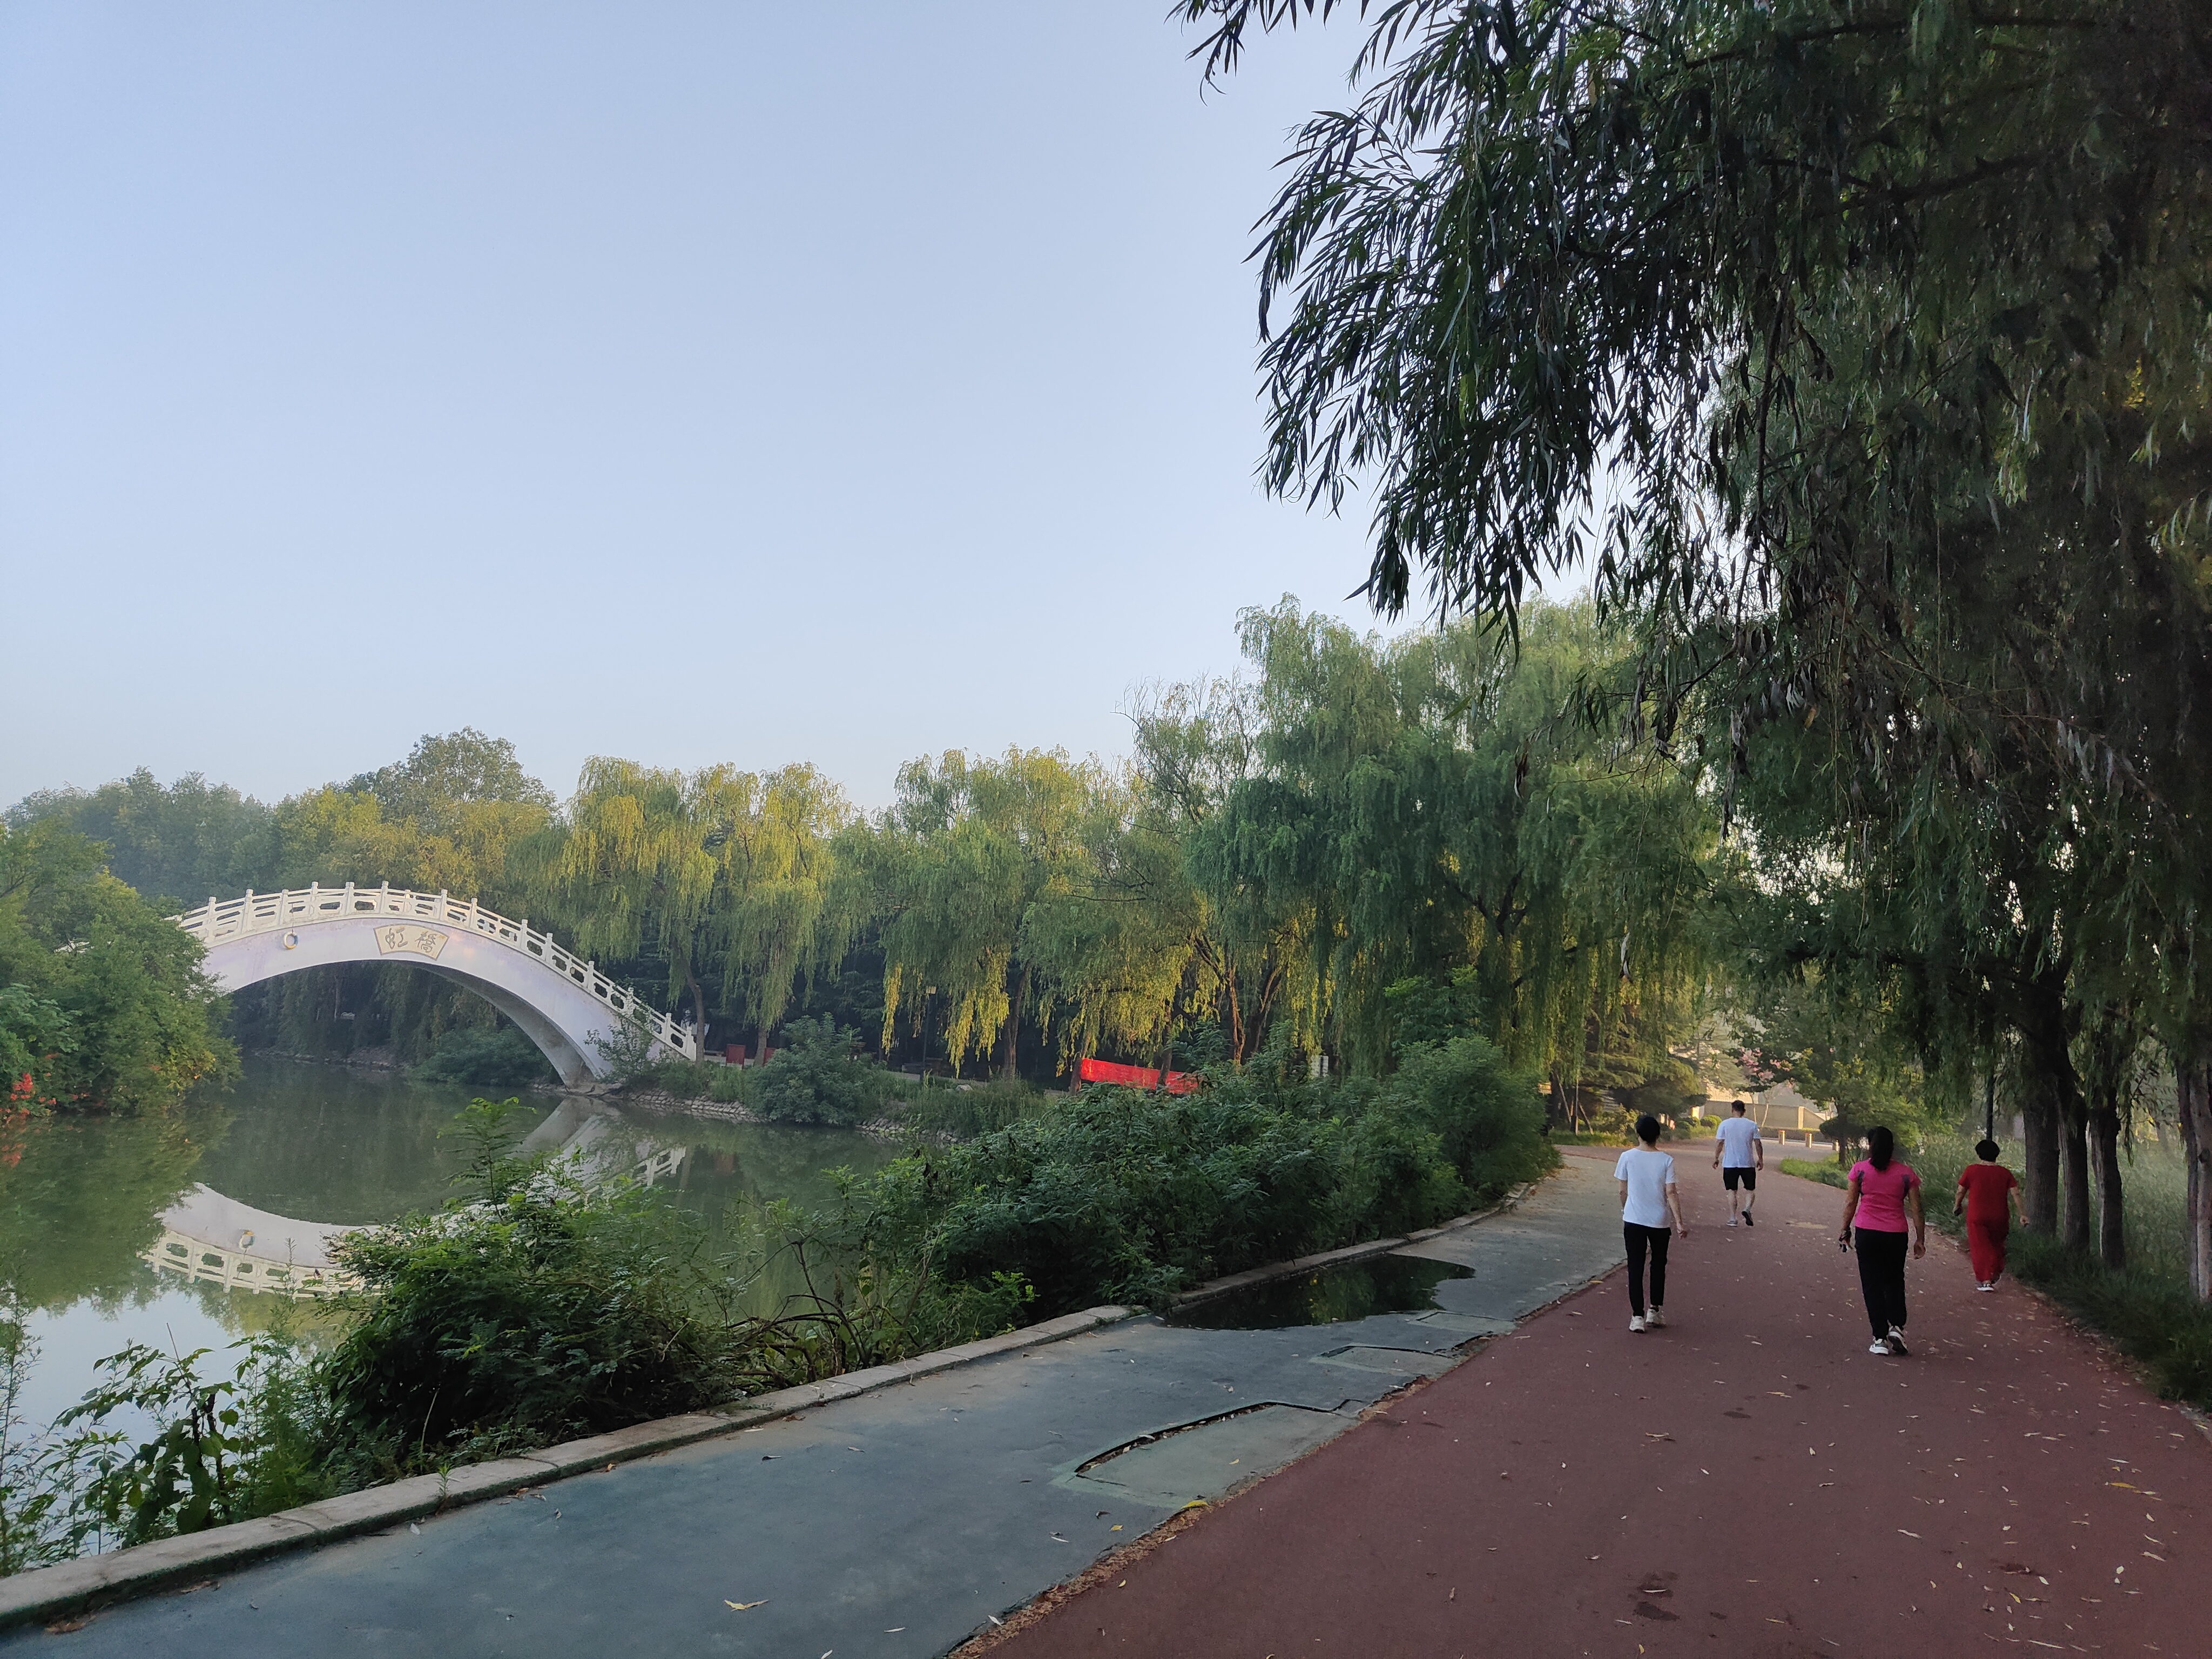 拍摄时间:2022年7月21日拍摄地点:禹州市森林植物园手机随拍:贺景昌